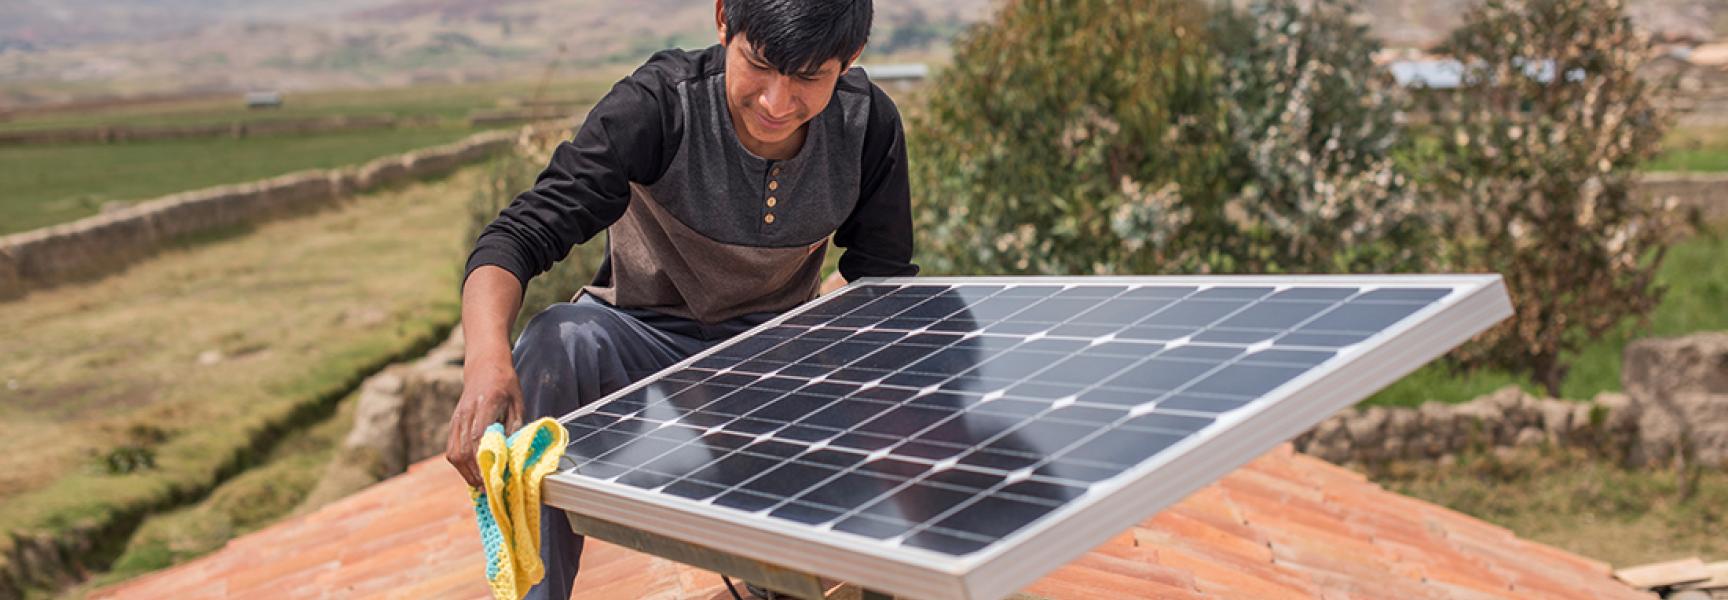 Persona trabajando en un panel solar en Perú